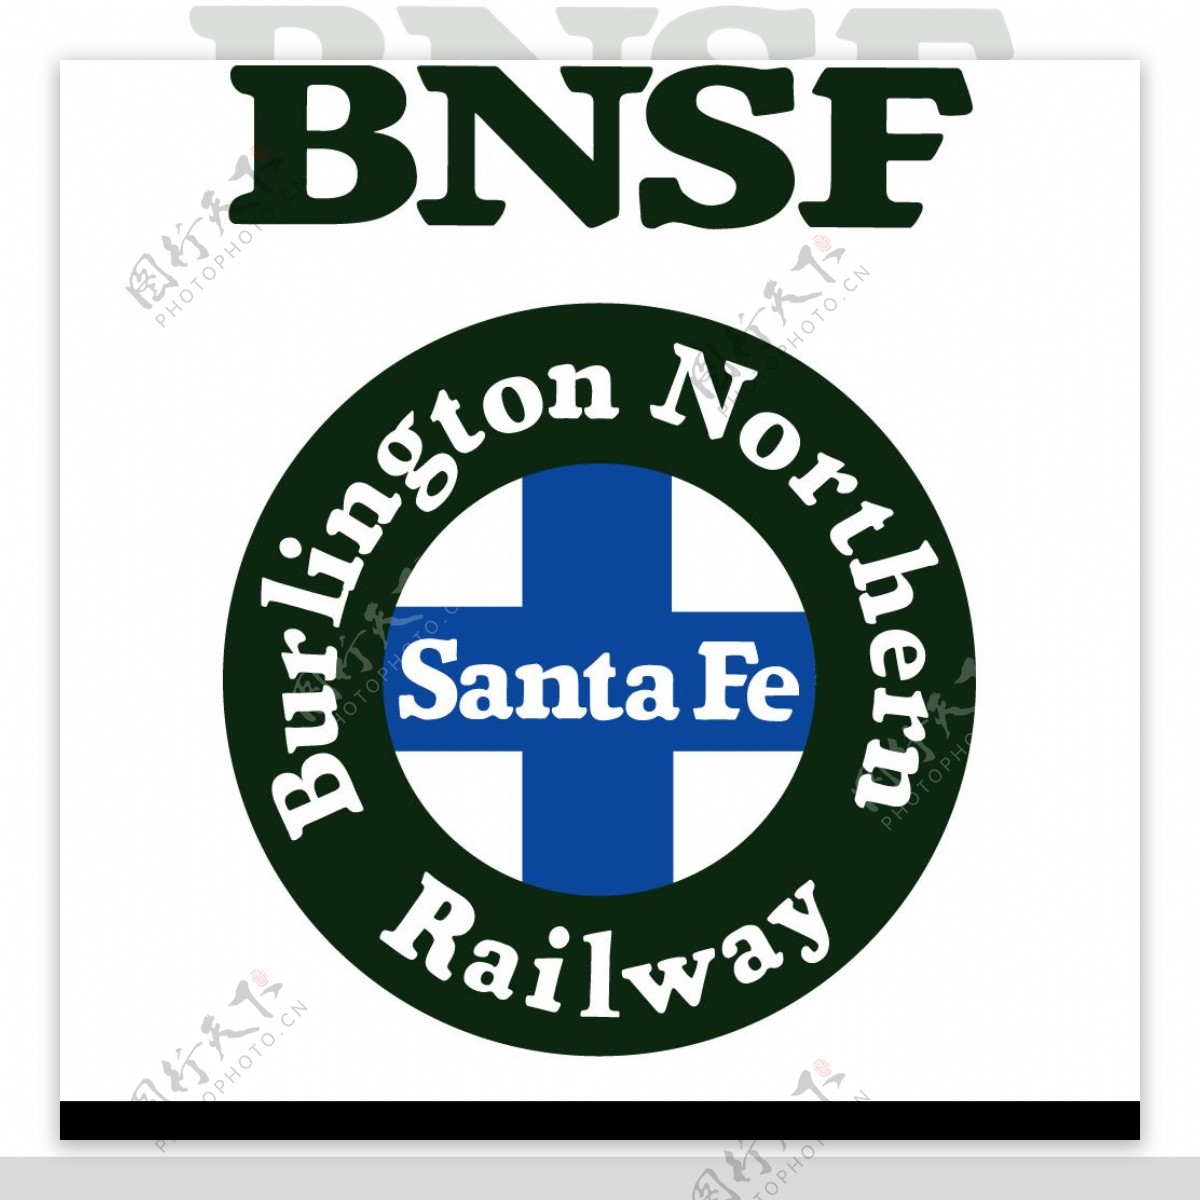 BNSF伯林顿北方桑特菲标志图片